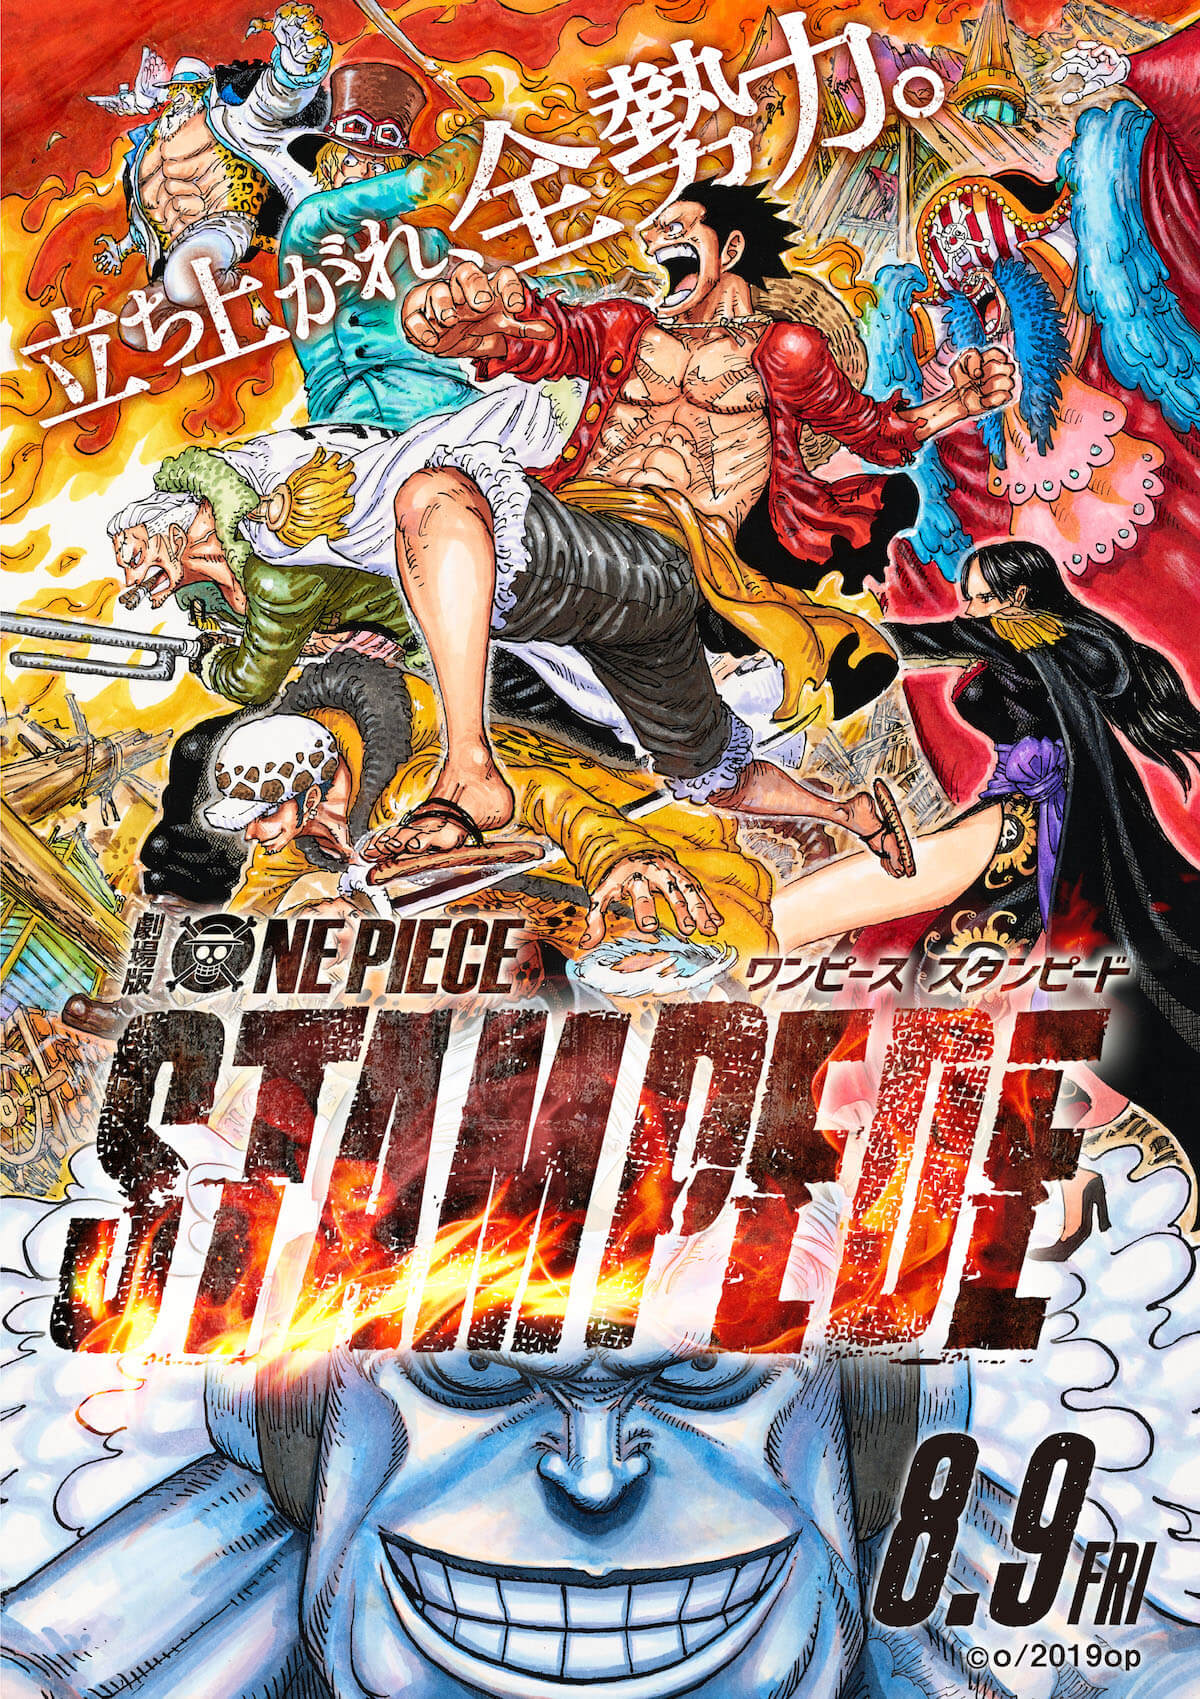 尾田栄一郎描き下ろしポスター解禁 映画 One Piece Stampede ルフィが ルッチが サボが共闘 Qetic